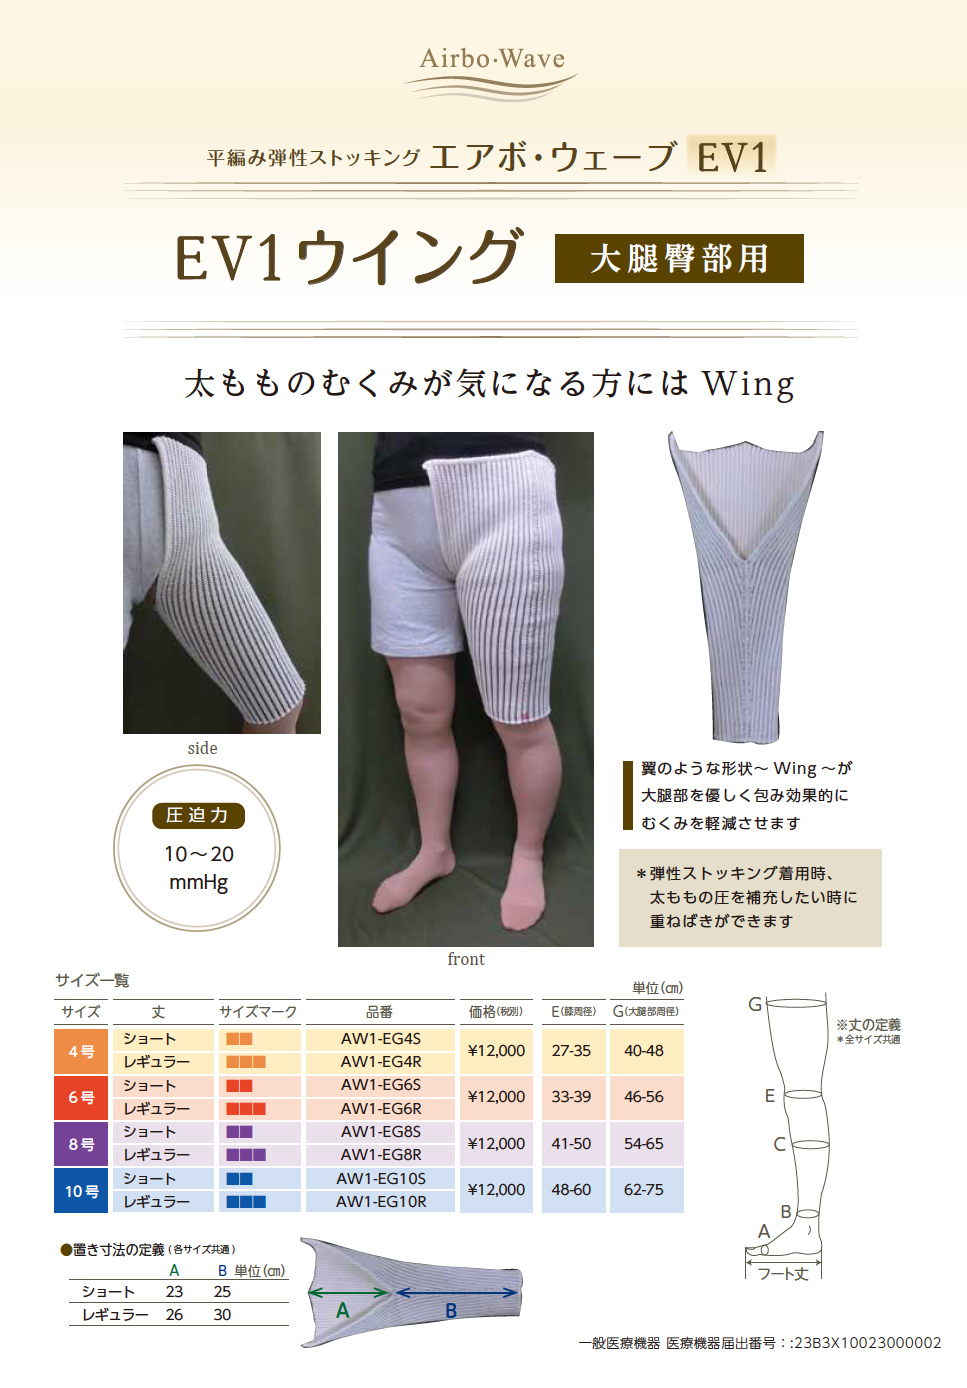 平編み弾性ストッキング「エアボ・ウェーブEV1」（膝下用・脚用・大腿 